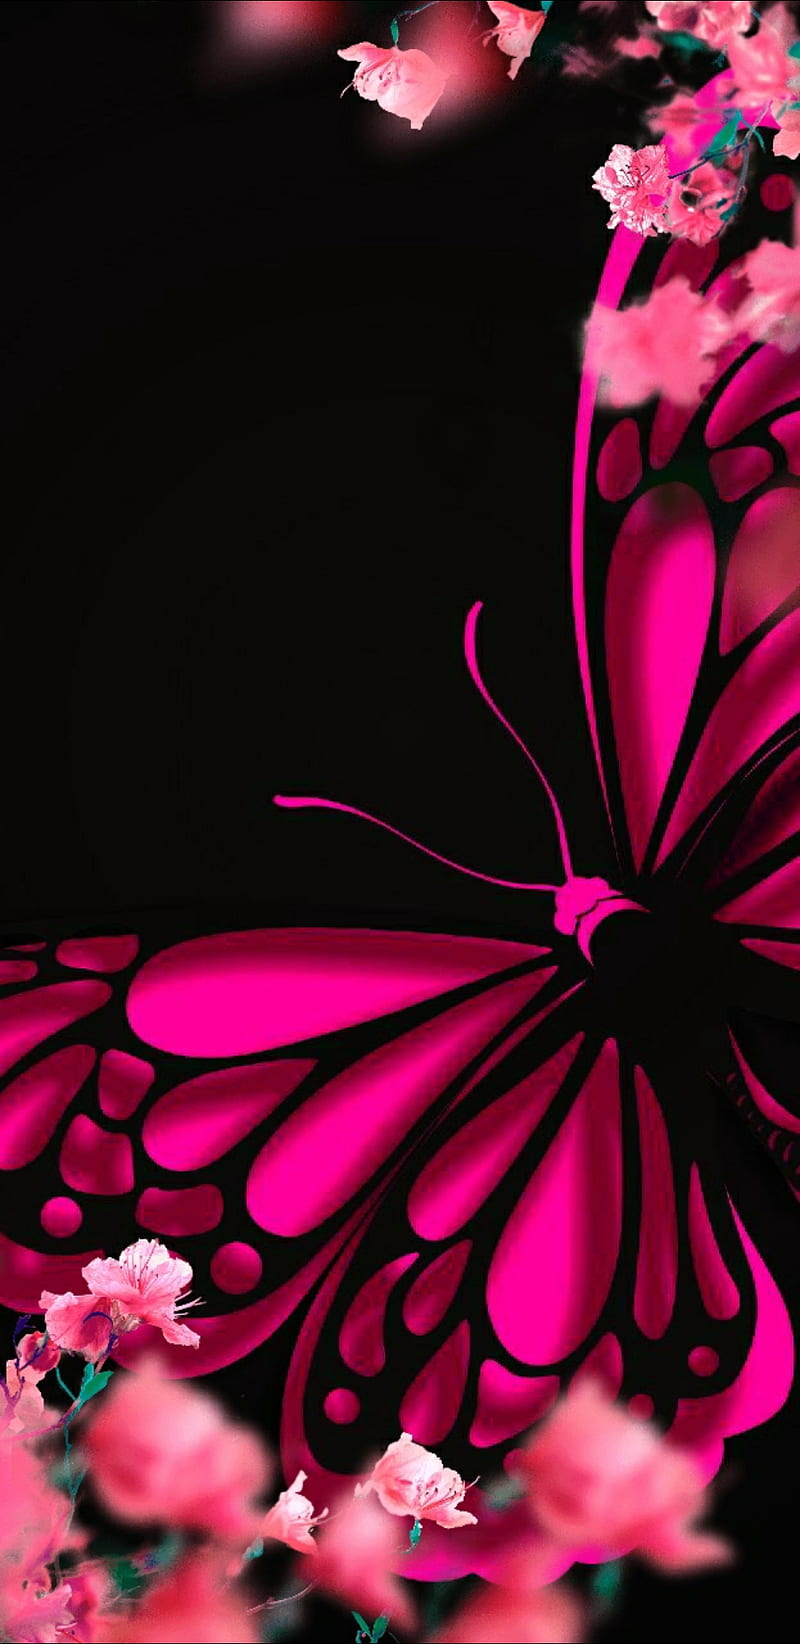 Butterfly, cute, flower, girl, pink ...